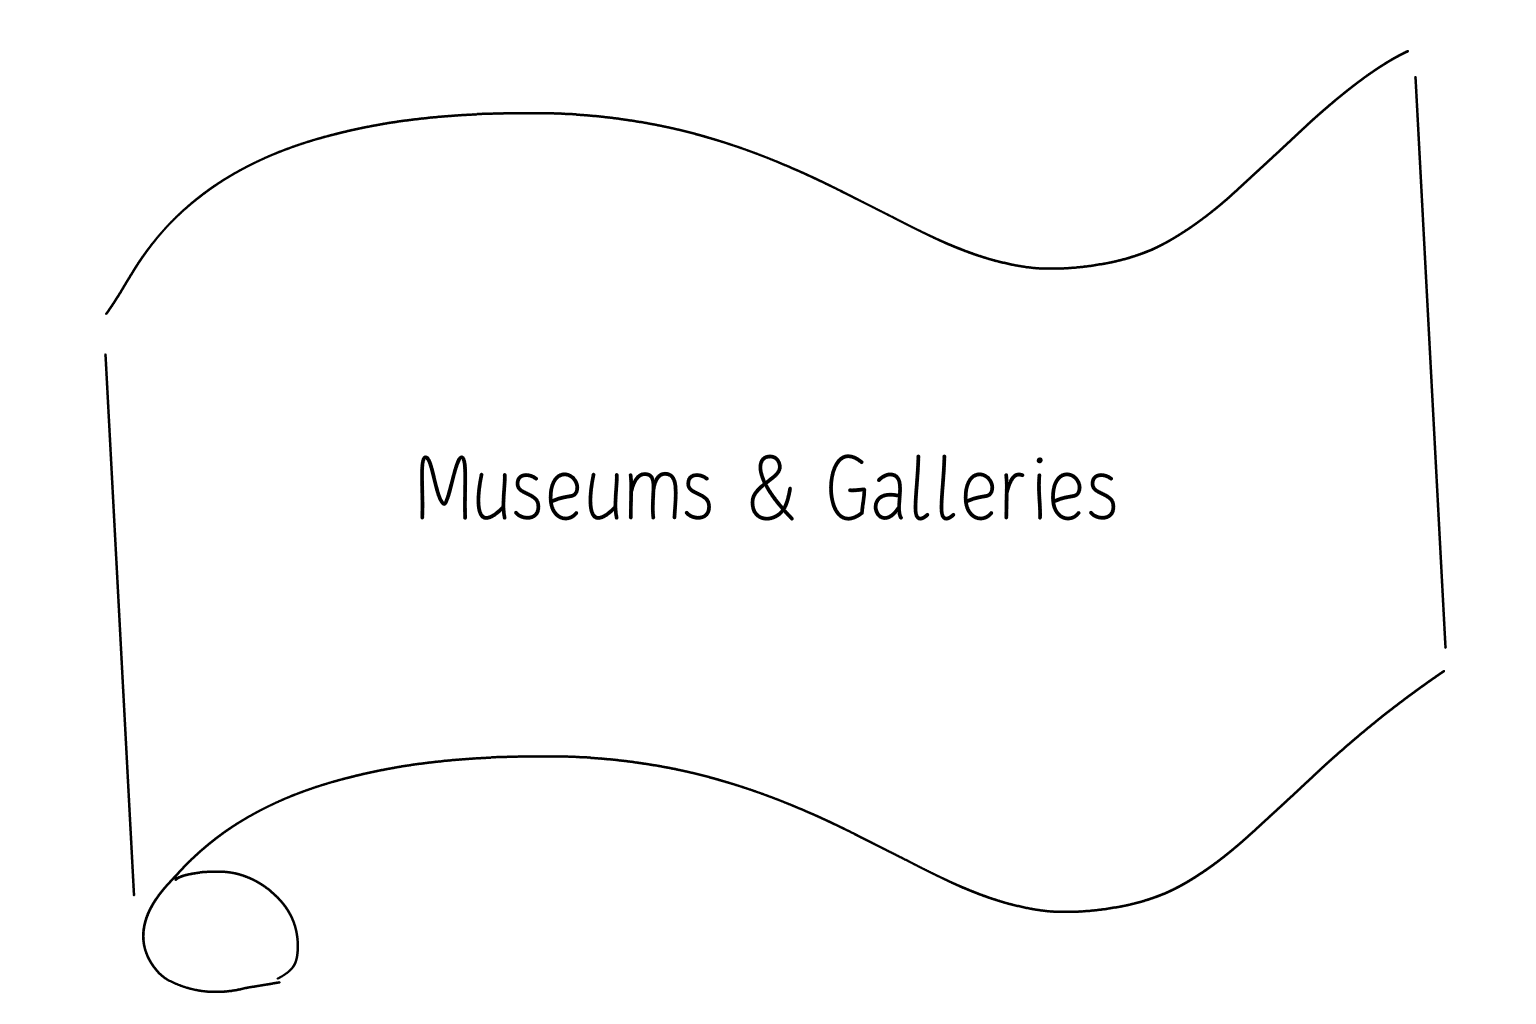 Иллюстрация свадебного музея и галереи